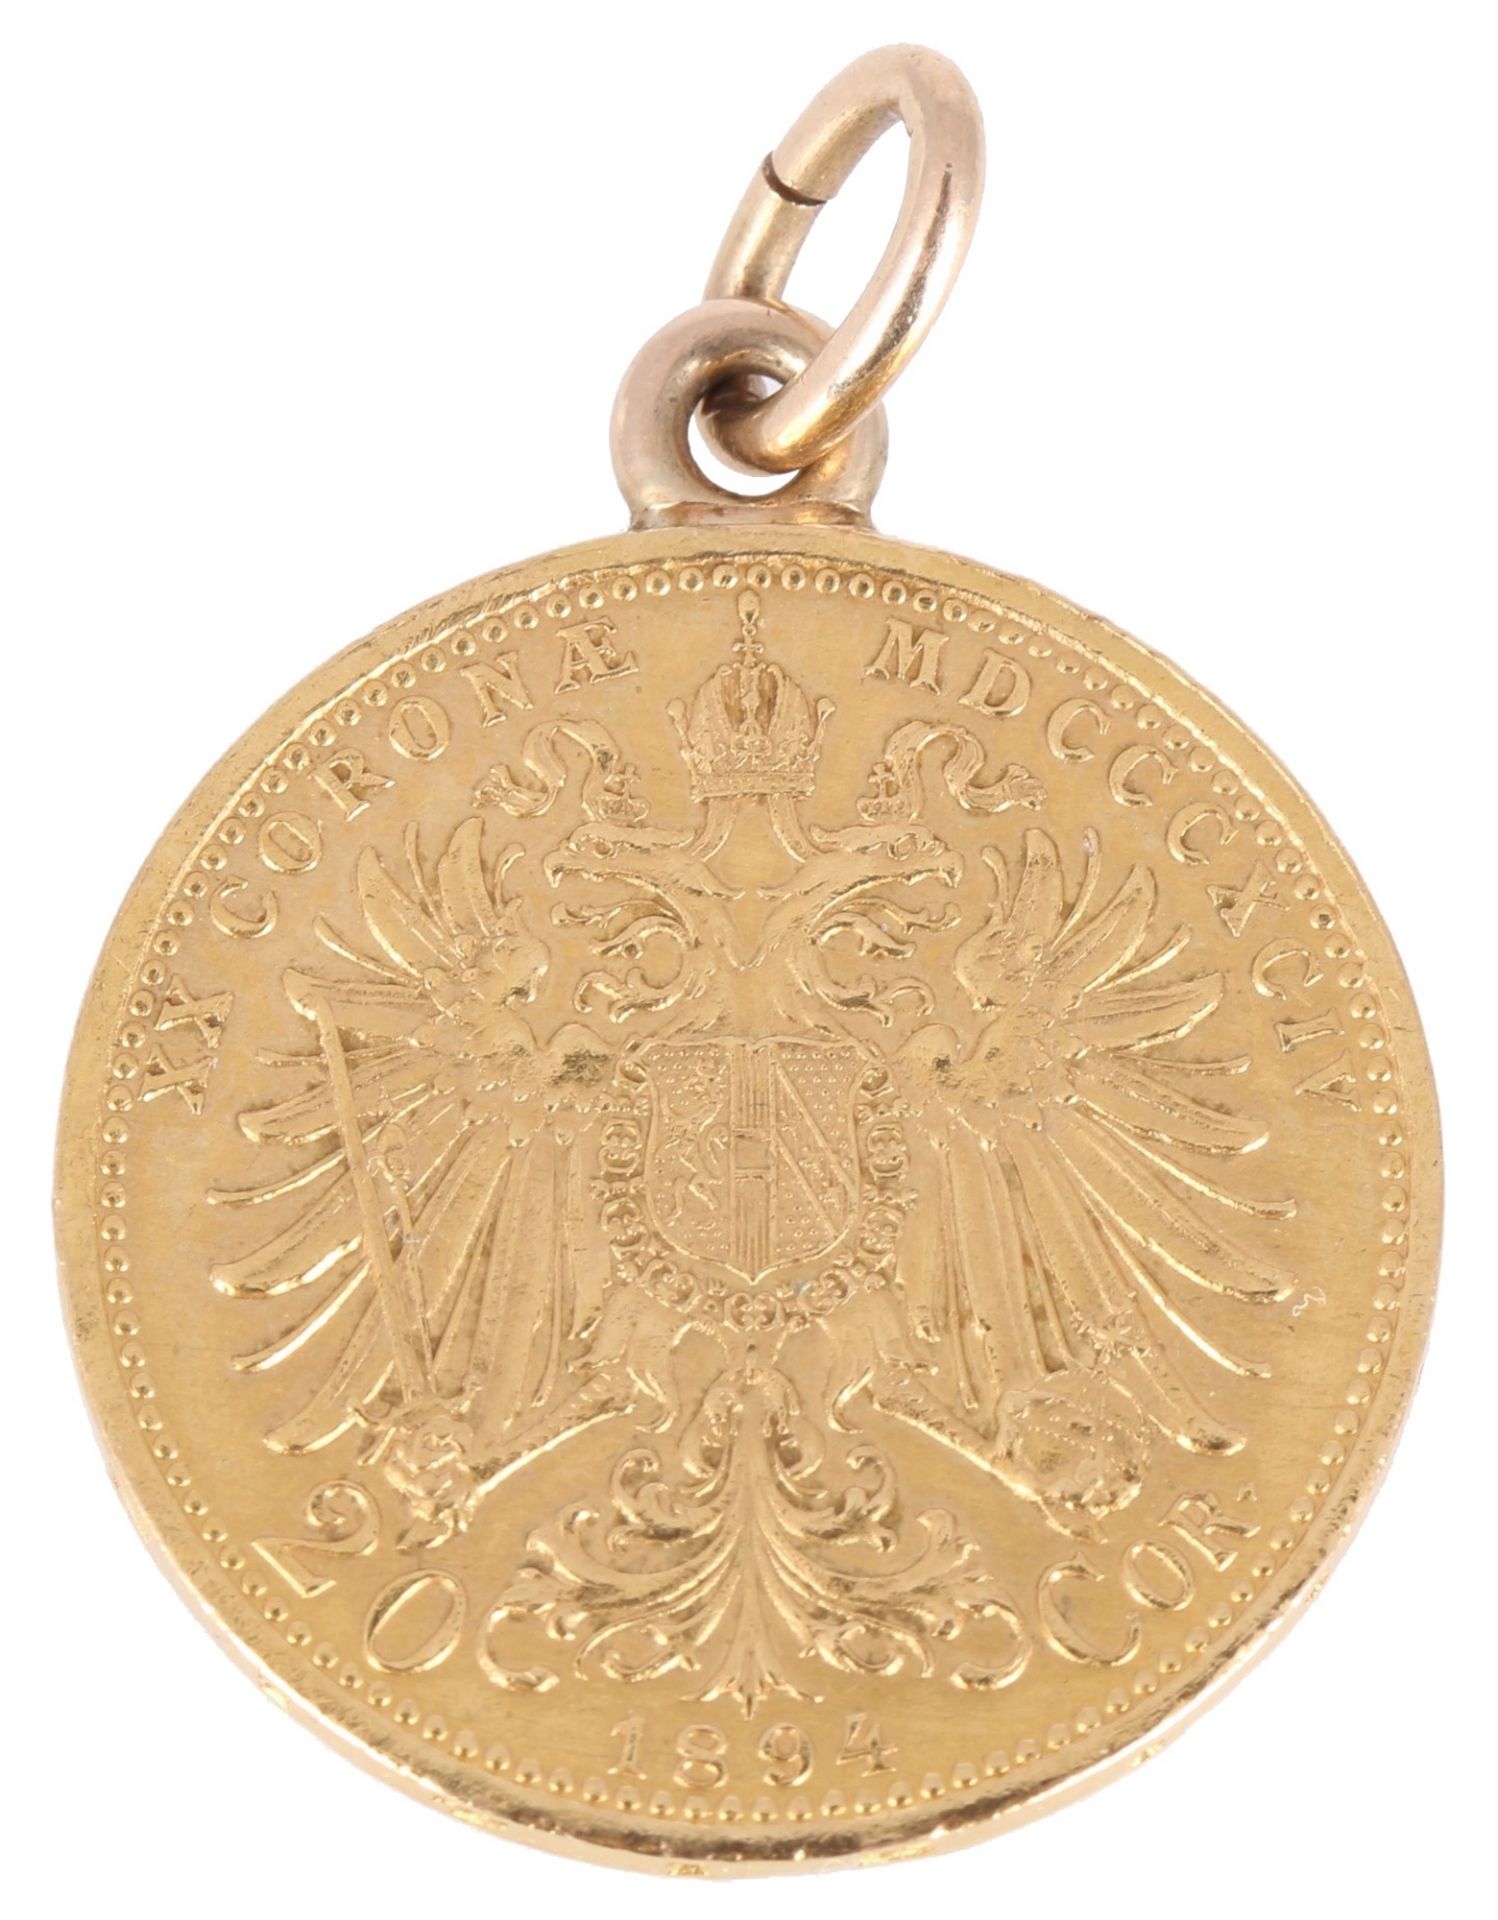 Goldmünze Österreich 20 Kronen 1894 Kaiser Franz Joseph I., austrian gold coin as pendant, - Image 2 of 3